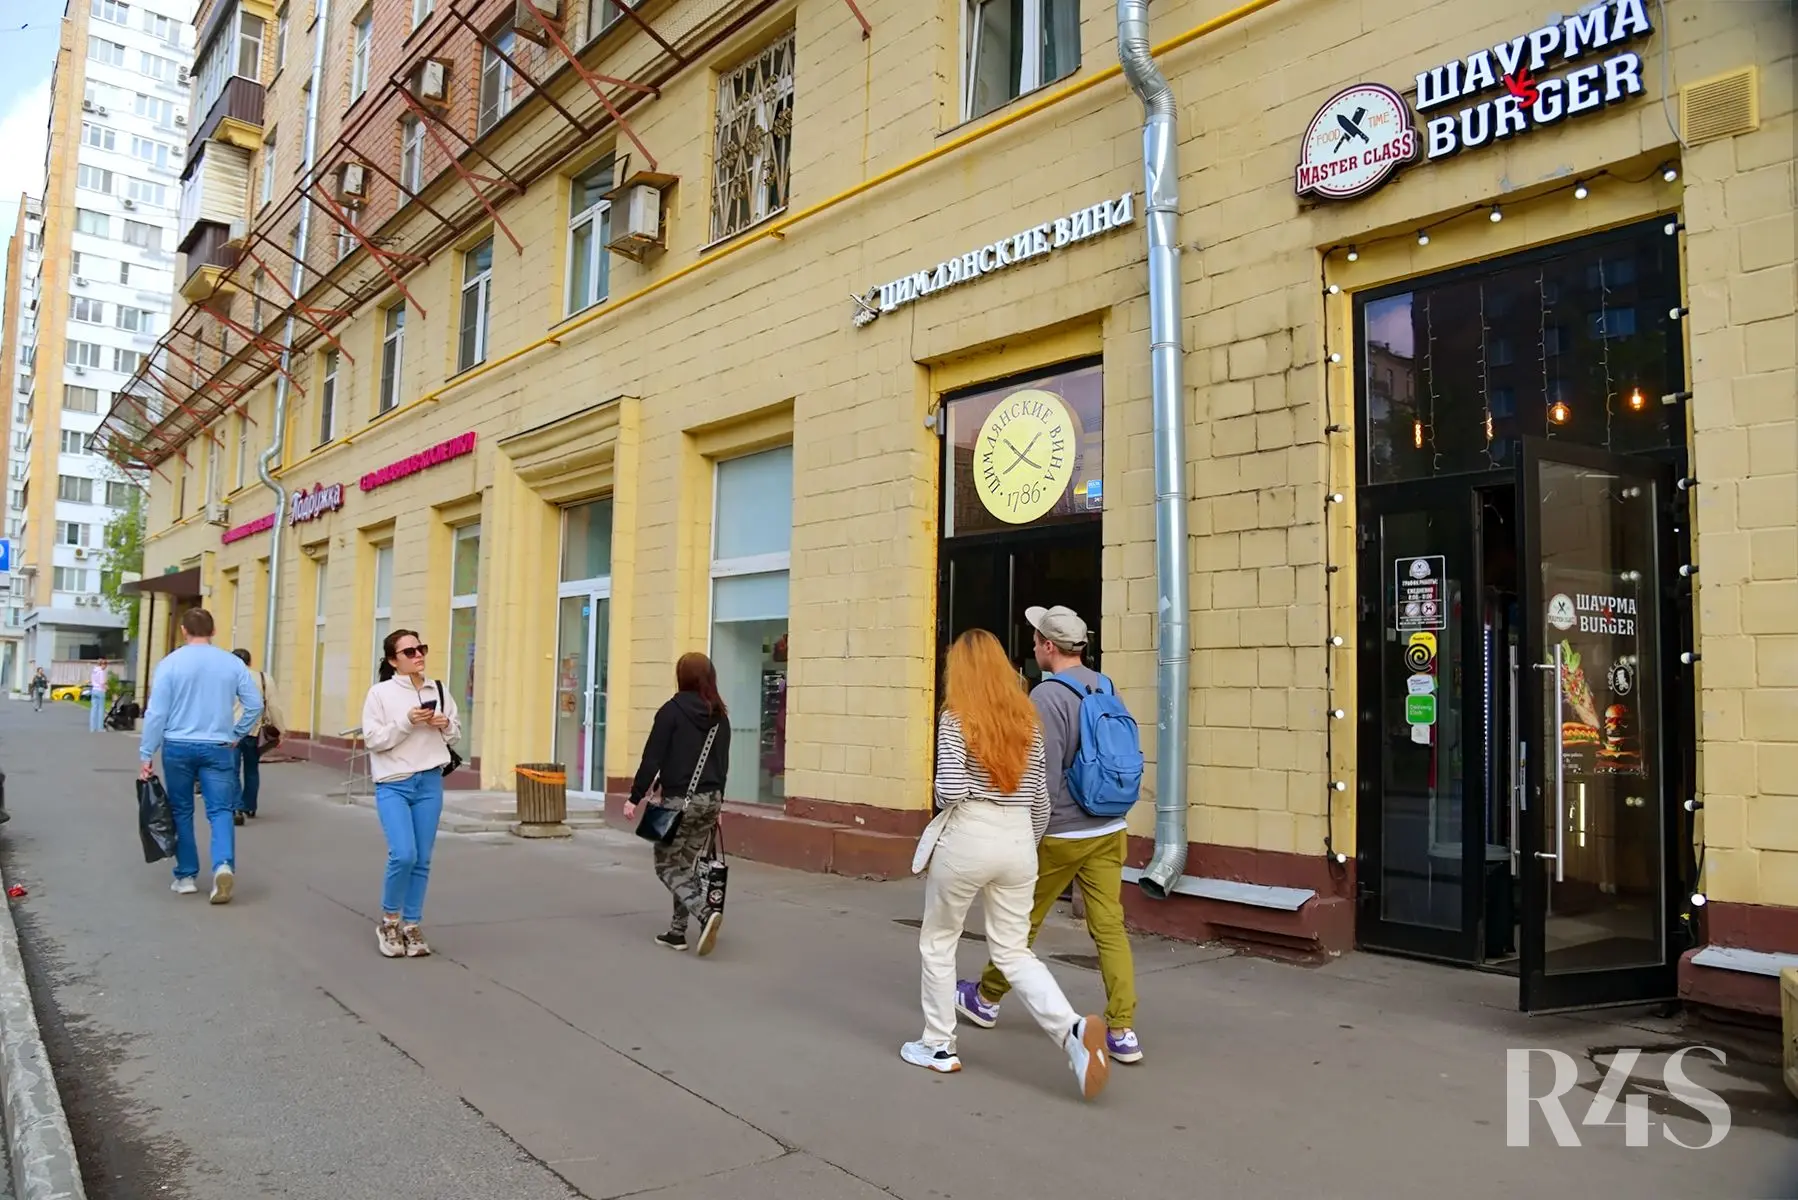 Продажа готового арендного бизнеса площадью 180 м2 в Москве: Щербаковская, 35 R4S | Realty4Sale